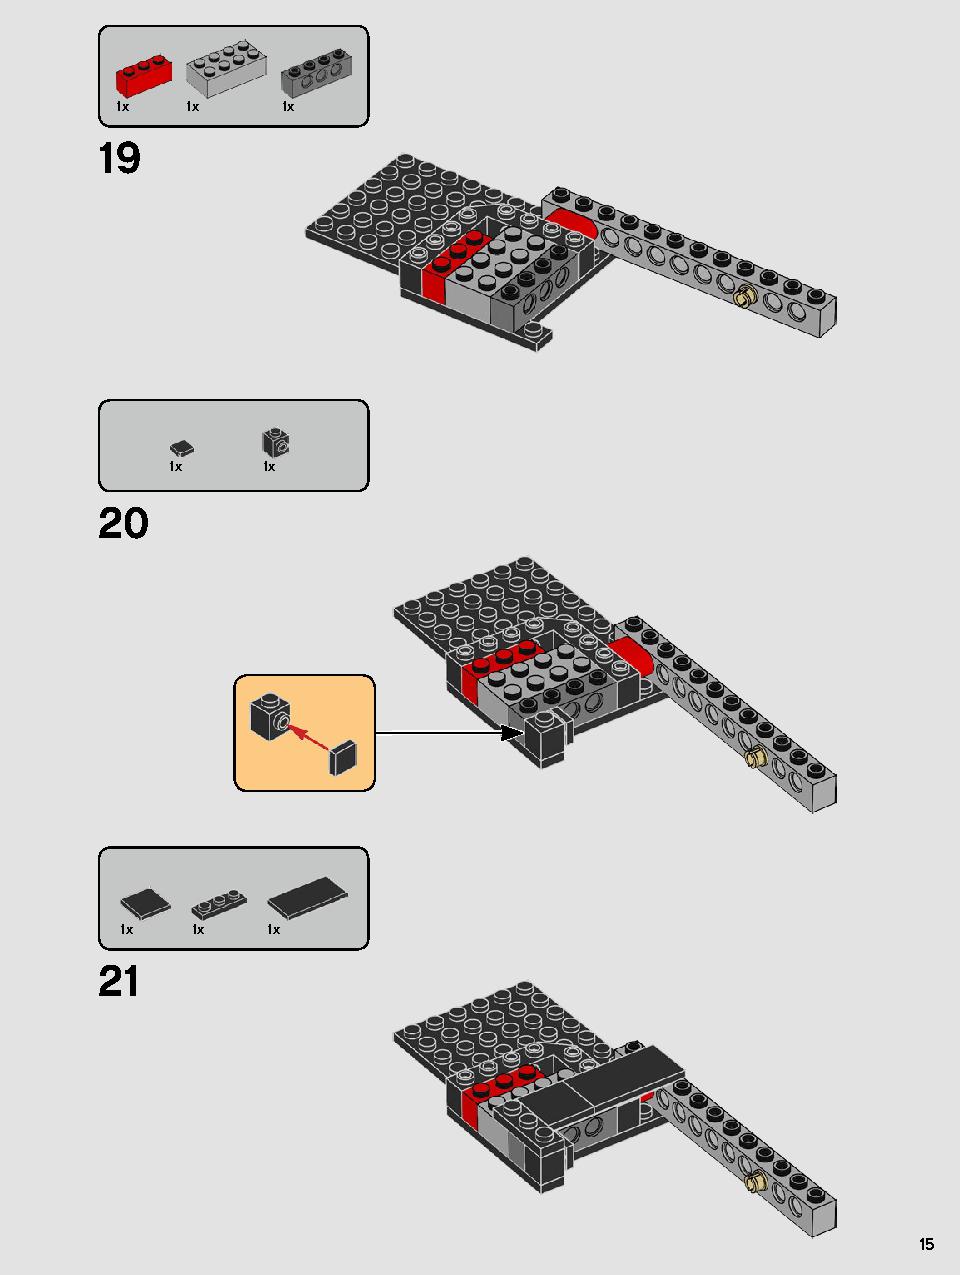 스타워즈 카일로 렌의 셔틀™ 75256 레고 세트 제품정보 레고 조립설명서 15 page